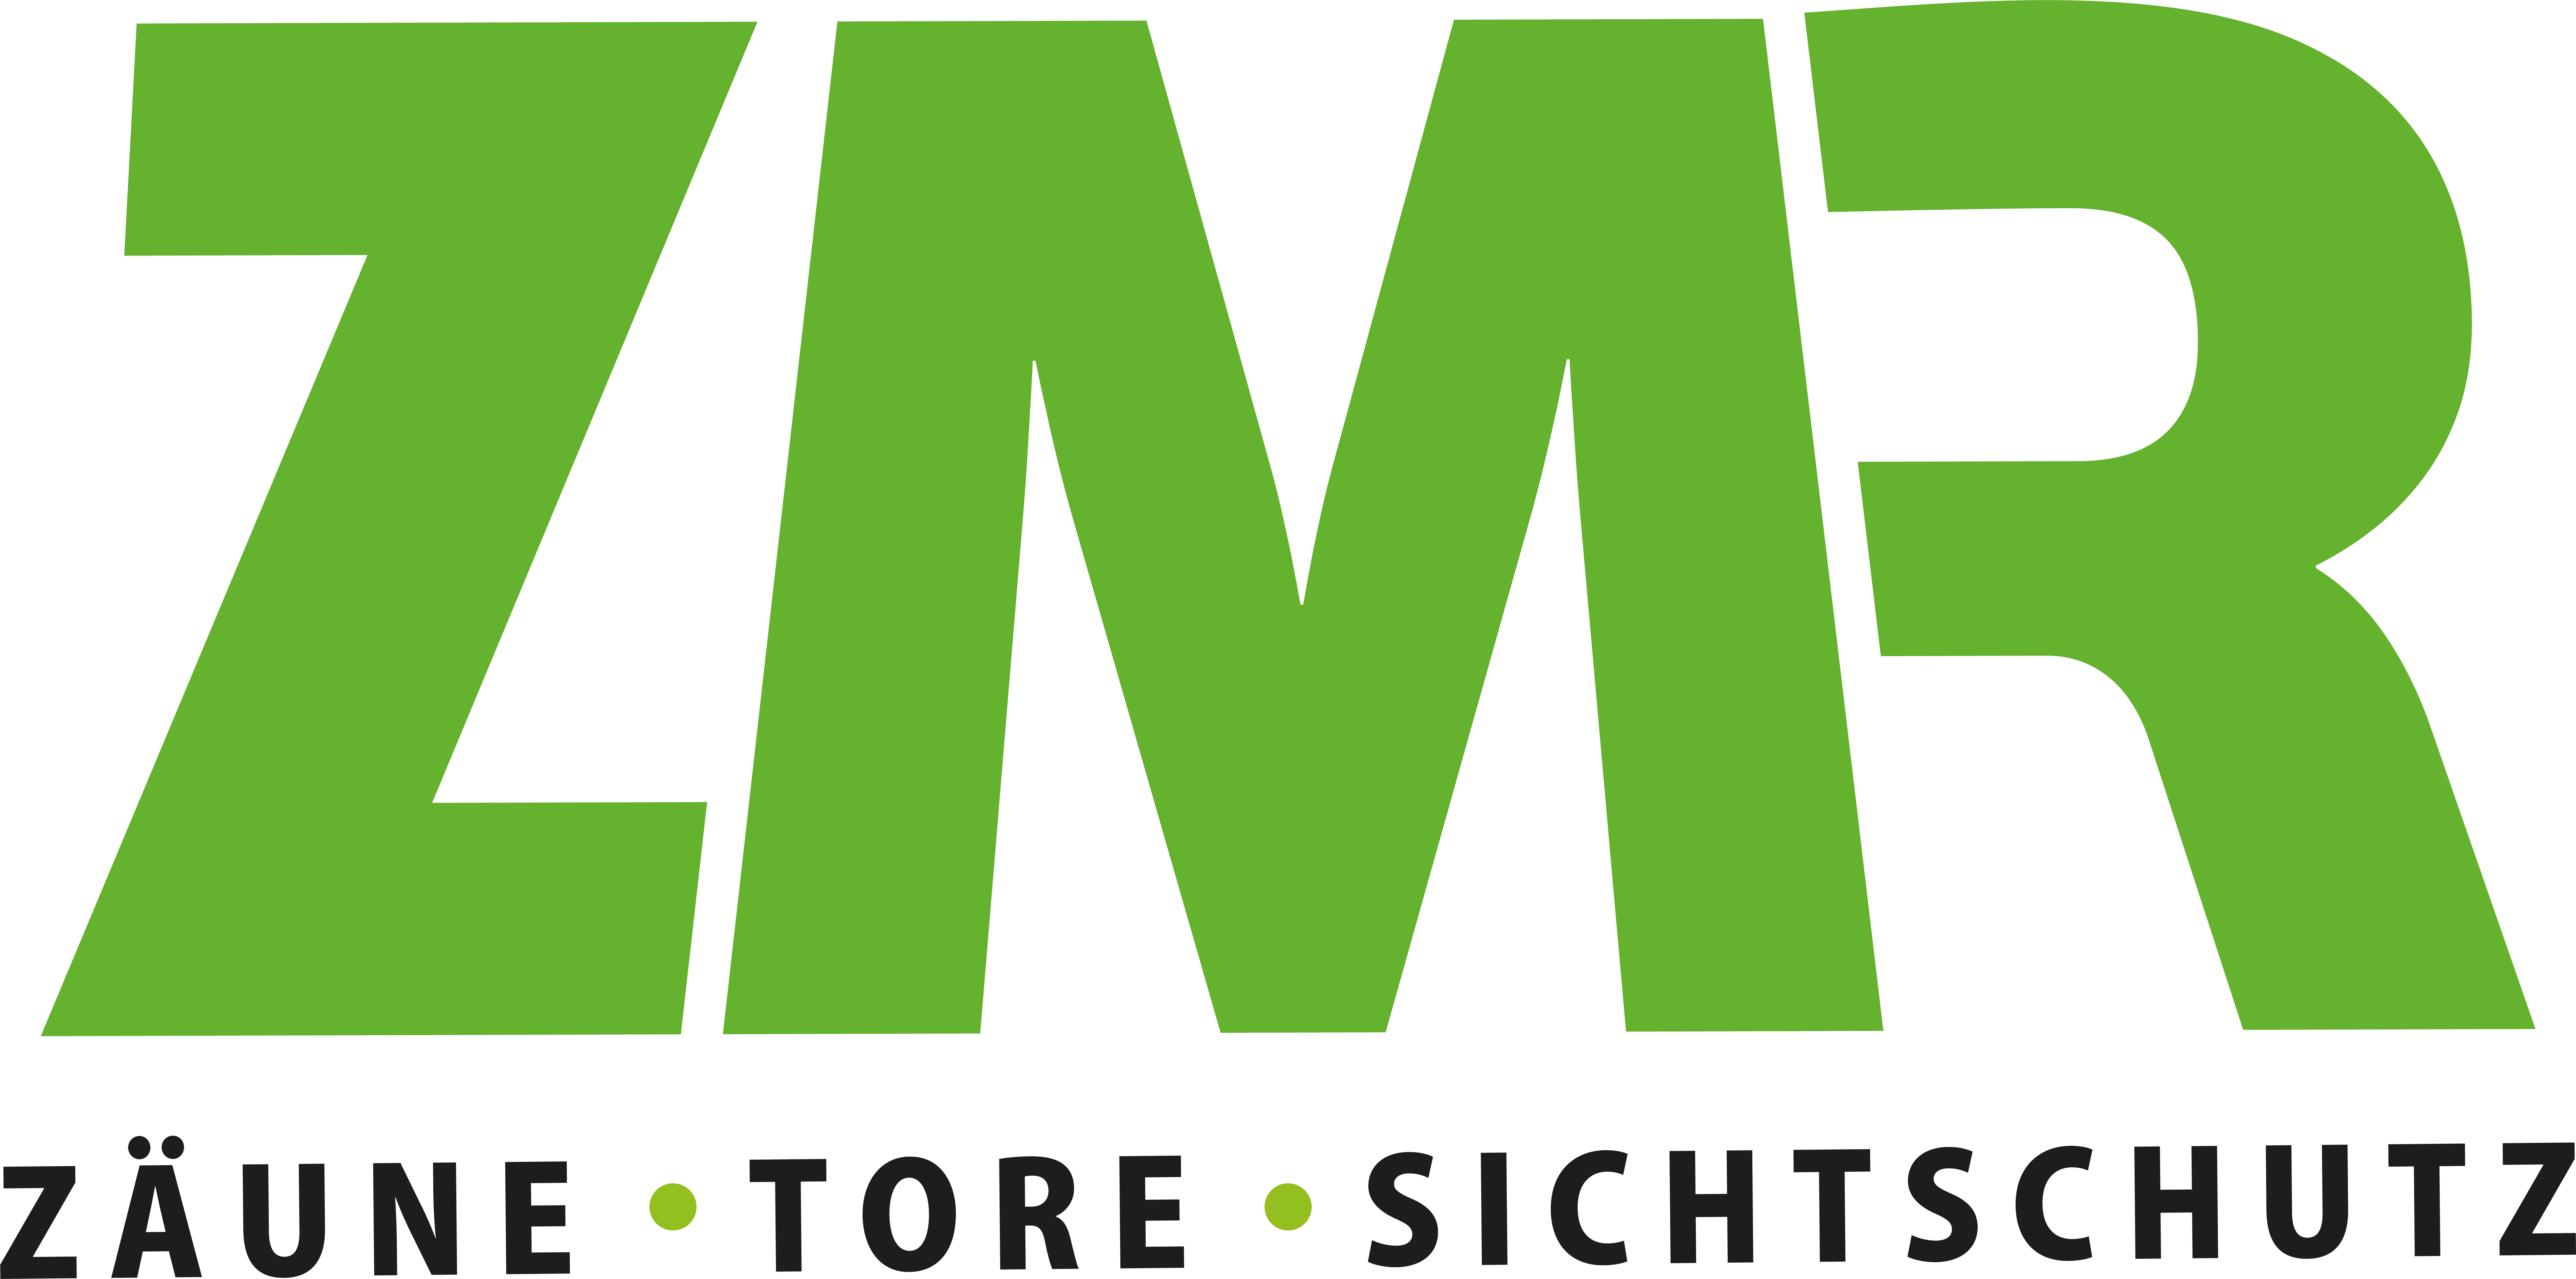 ZMR Zaunmontage Logo